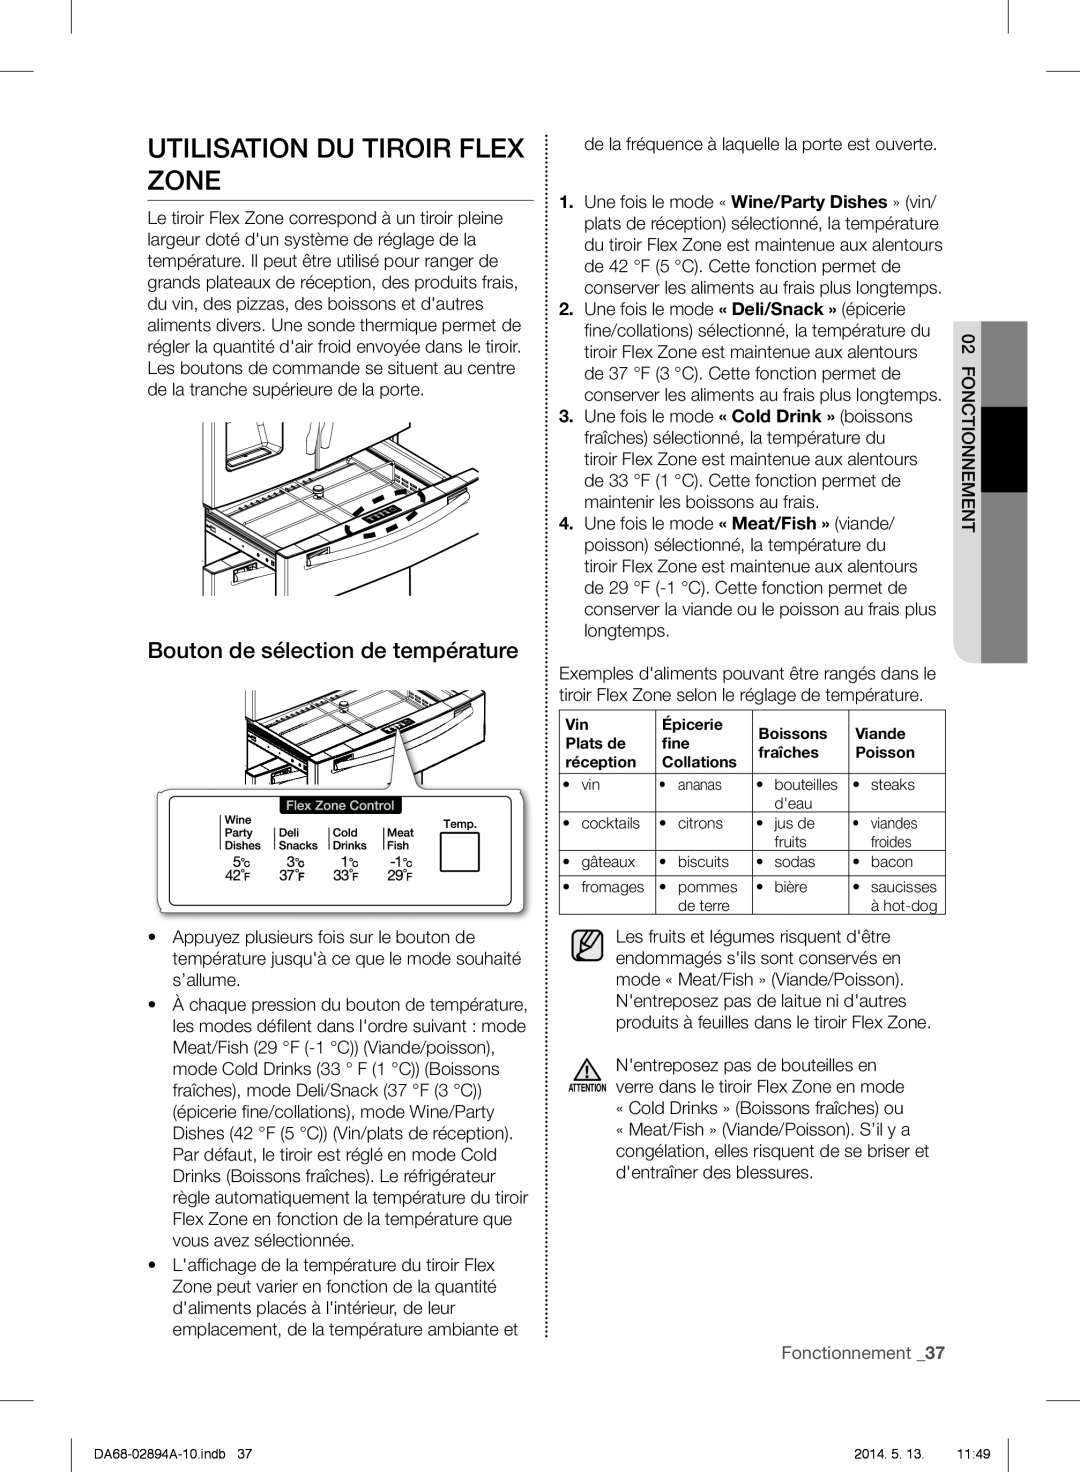 Samsung RF31FMESBSR user manual Utilisation Du Tiroir Flex Zone, Bouton de sélection de température, Fonctionnement _37 